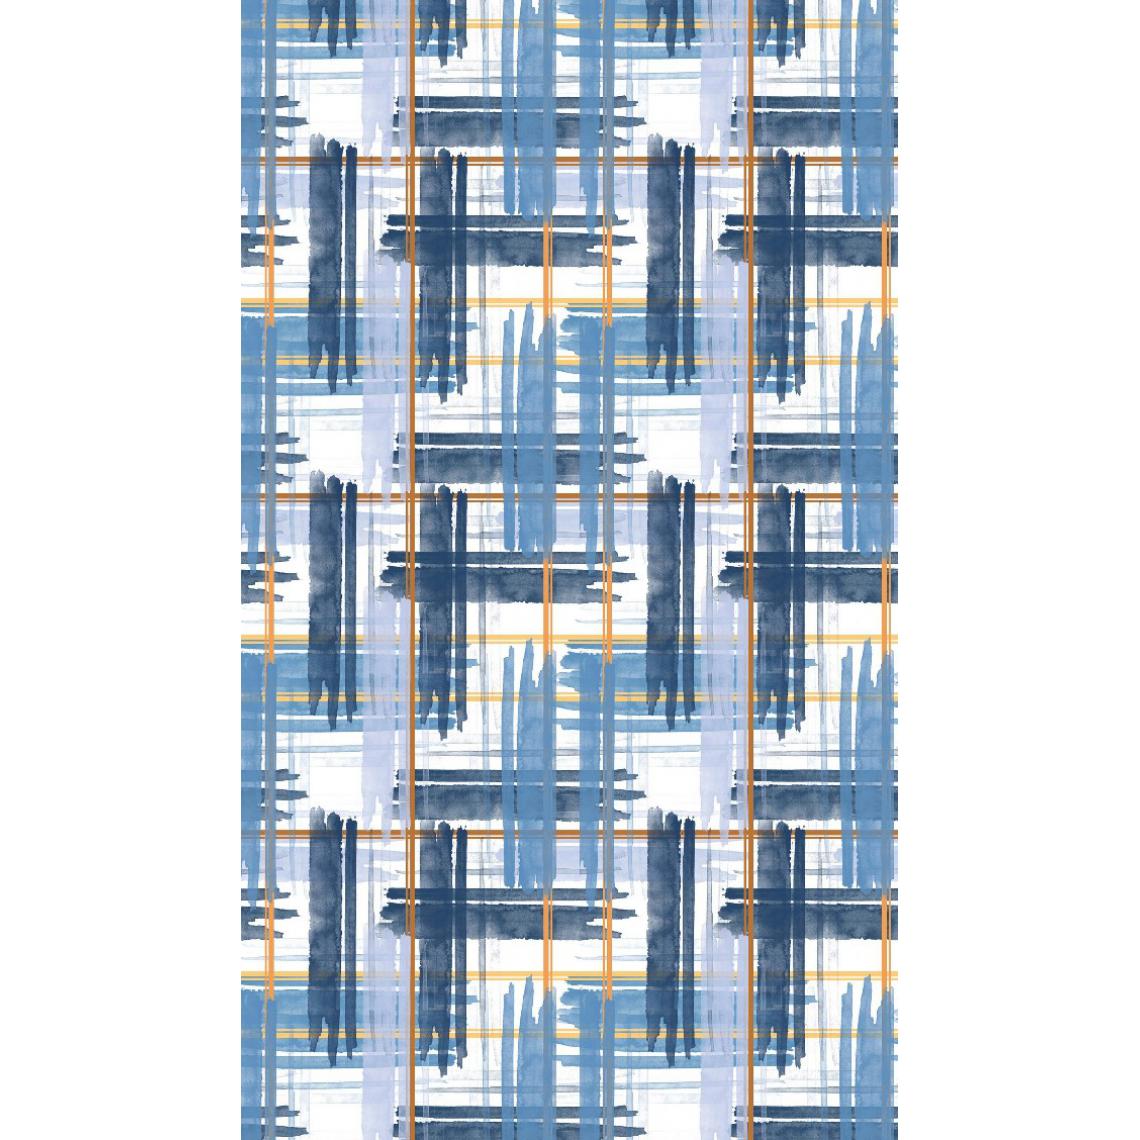 Homemania - HOMEMANIA Tapis Imprimé Labyrinth 1 - Géométrique - Décoration de Maison - Antidérapant - Pour Salon, séjour, chambre à coucher - Multicolore en Polyester, Coton, 60 x 100 cm - Tapis